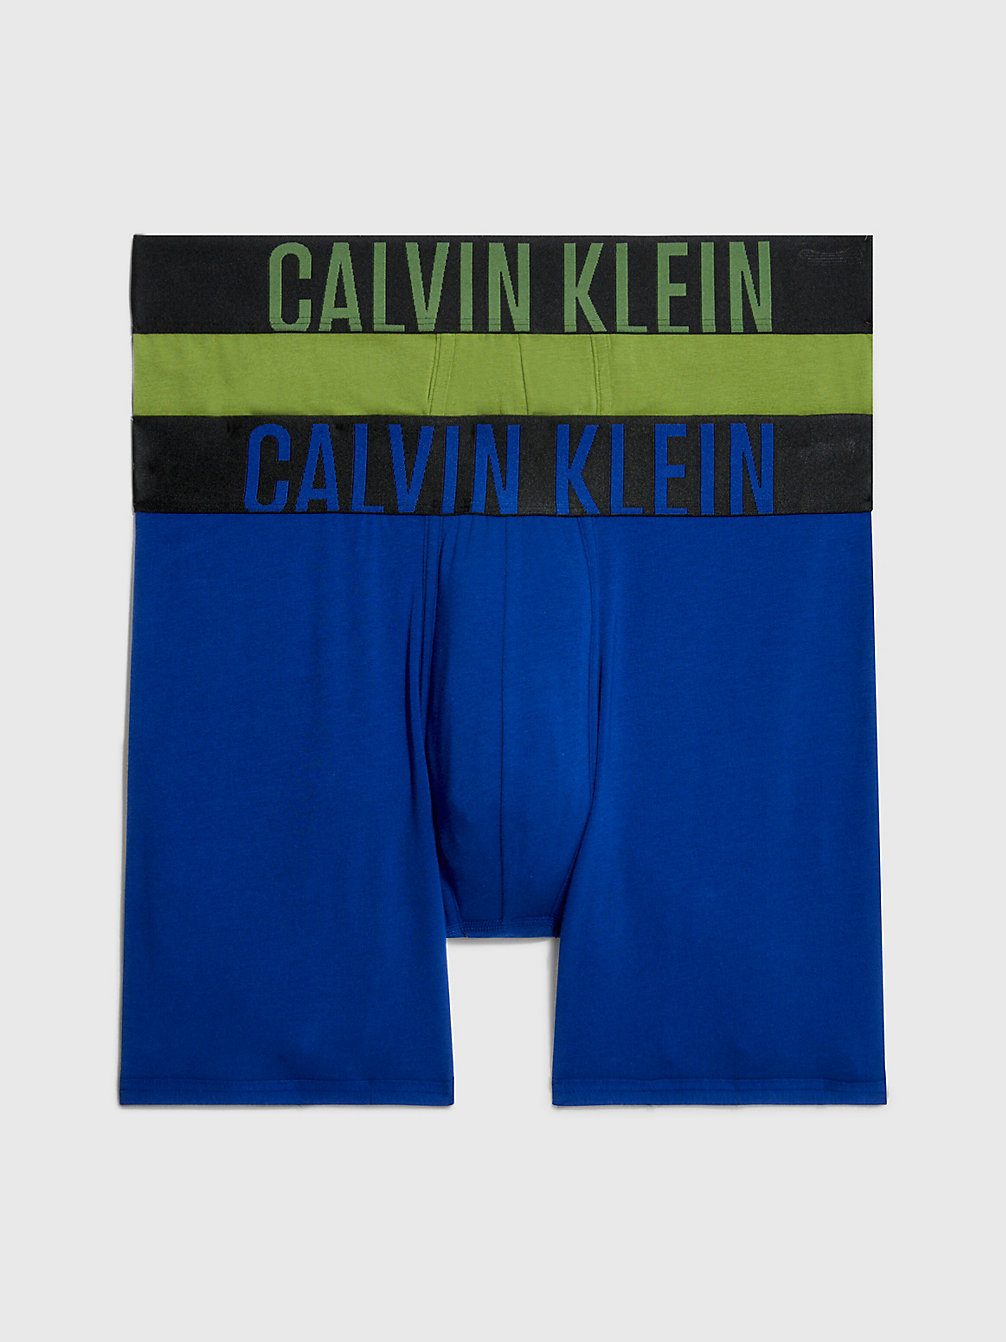 Men's Underwear & Boxers Sale - Up to 50% off | Calvin Klein®